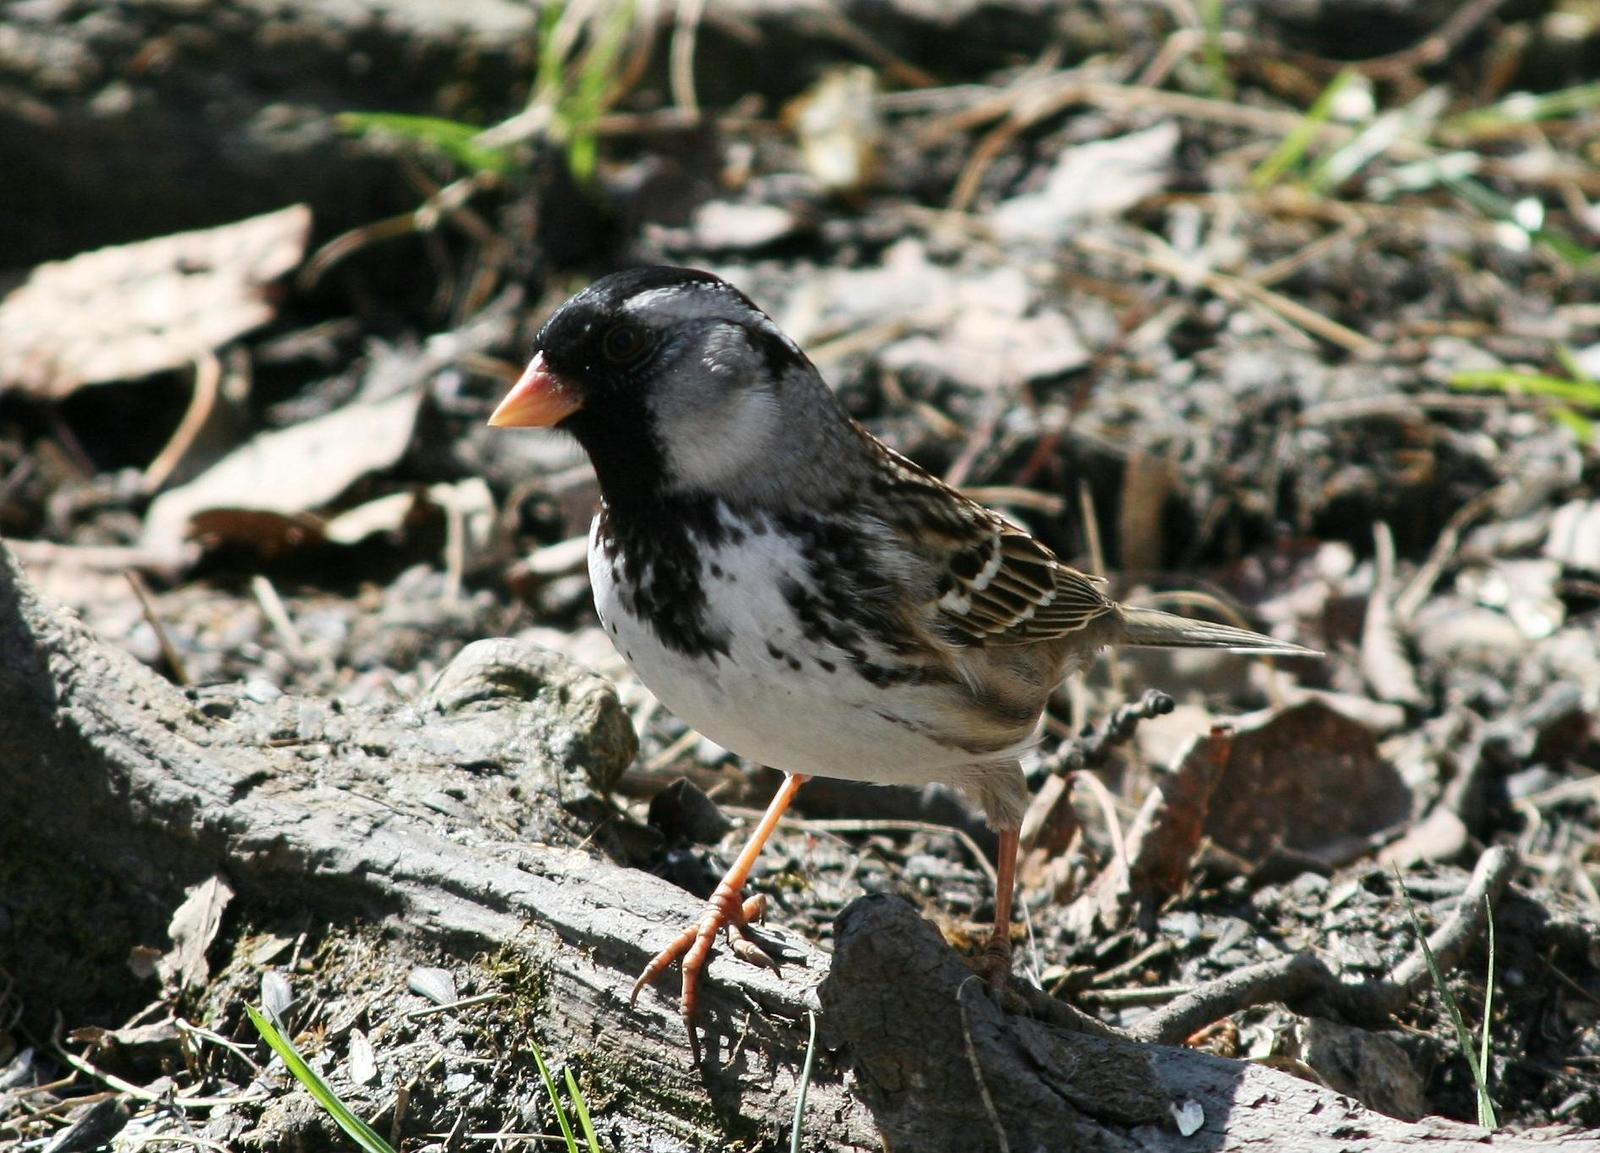 Harris's Sparrow Photo by Aaron Hywarren